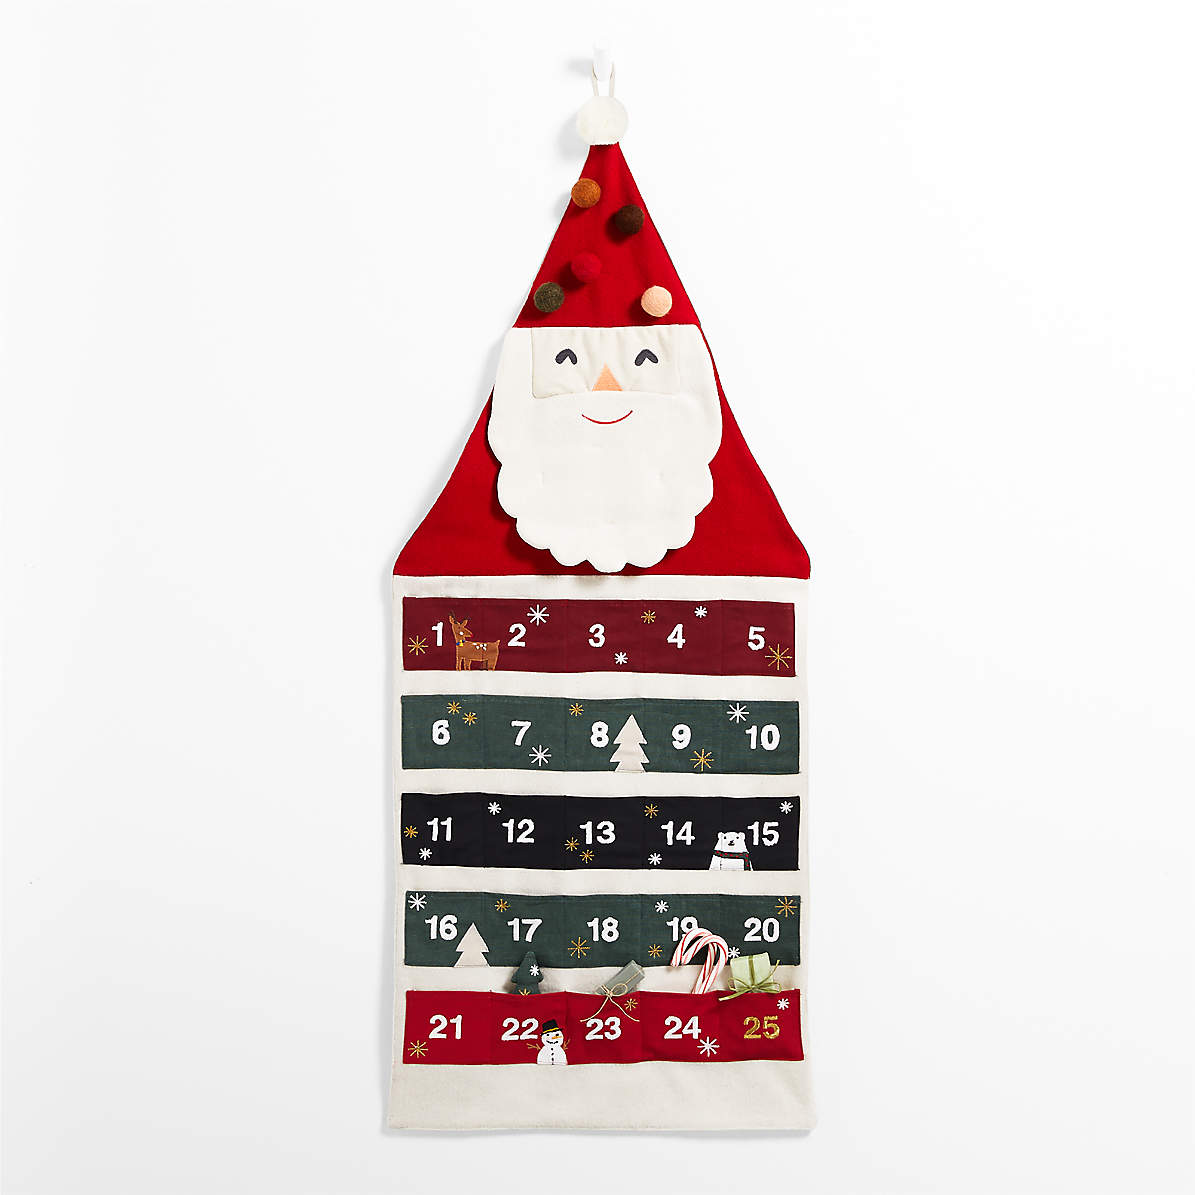 Personalize Fabric advent calendar for kids Advent calendar Christmas